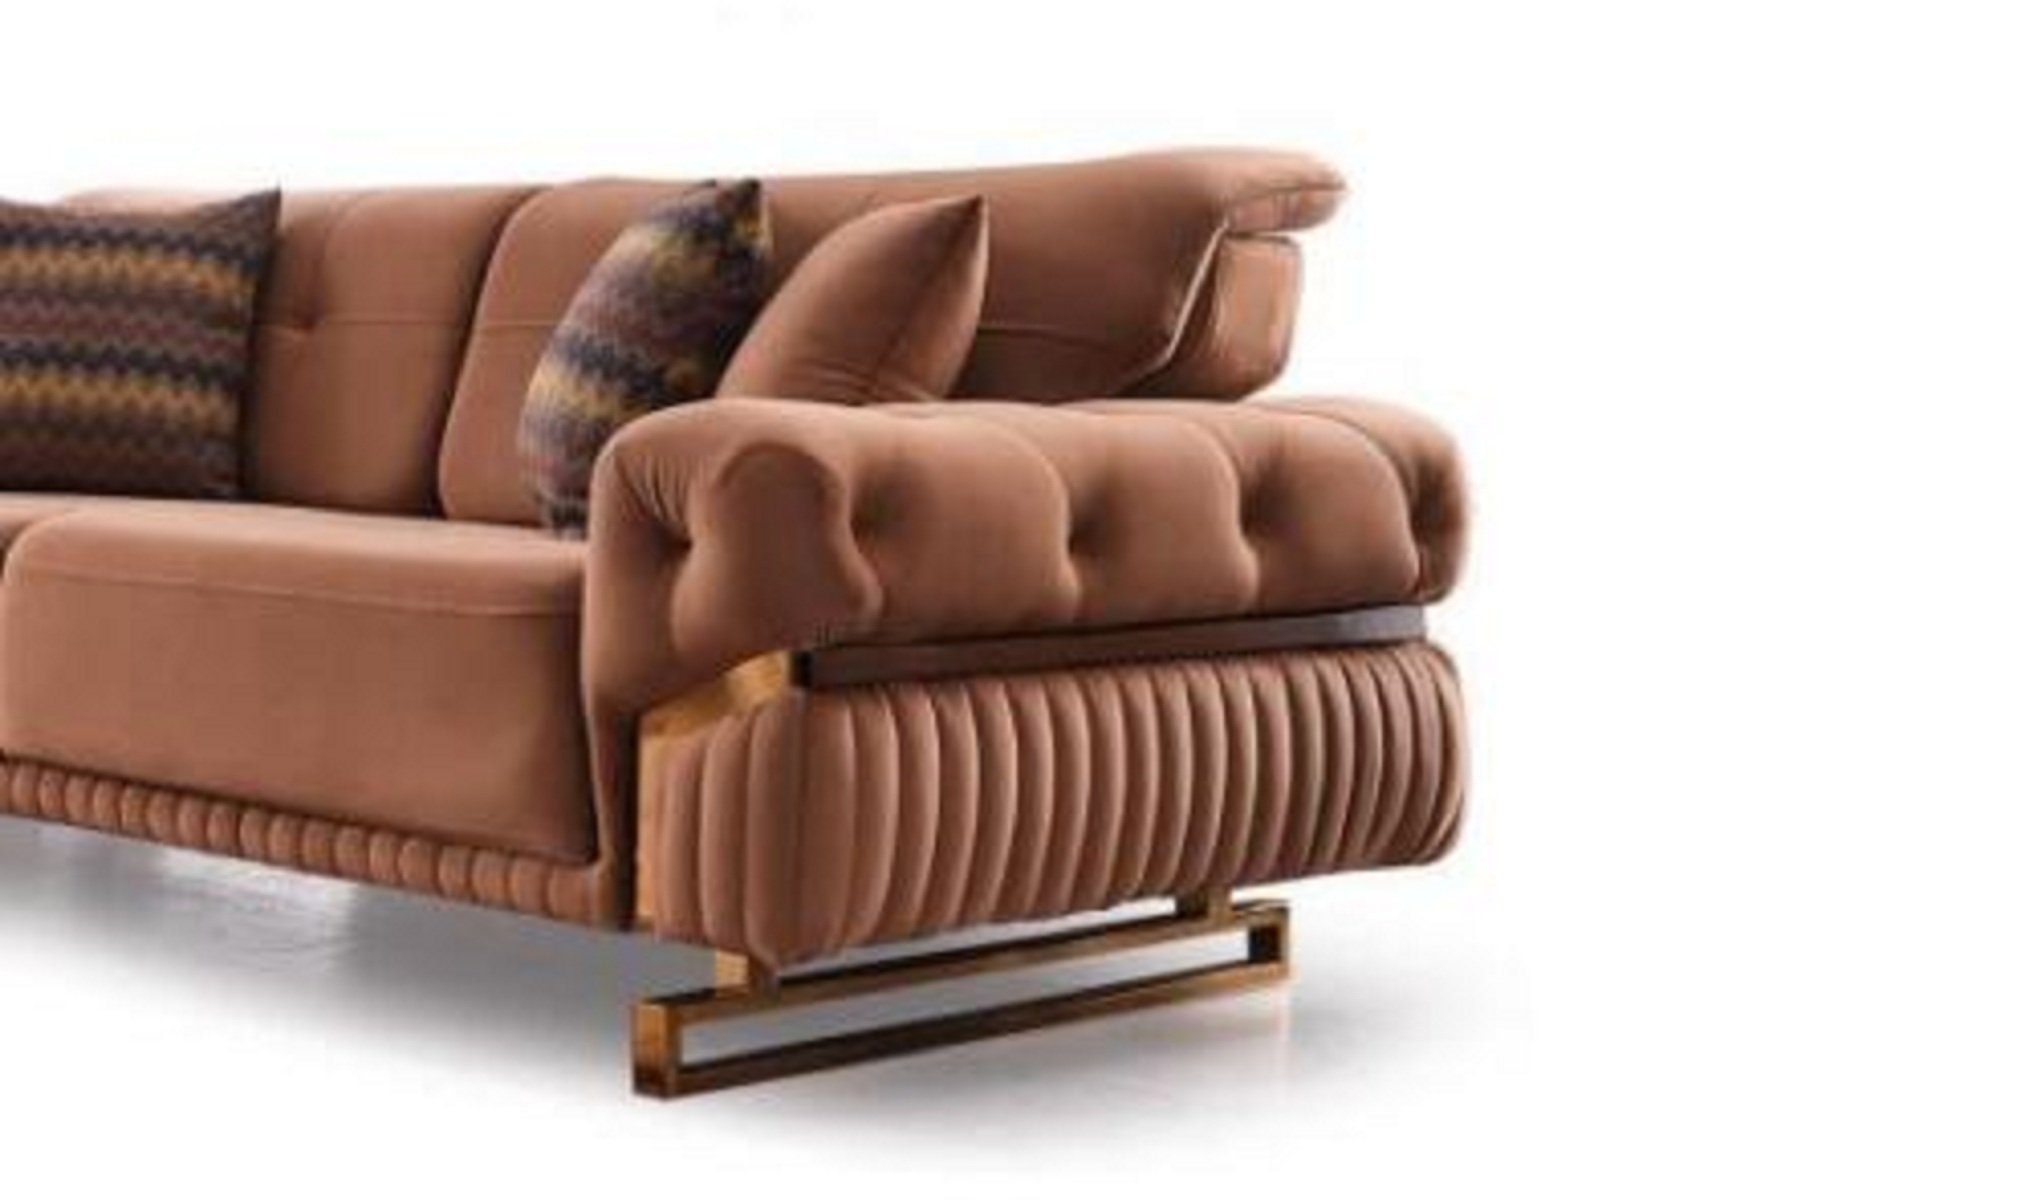 JVmoebel 3-Sitzer Luxus 3 sitzer Sofa Möbel Polster Stoff Couch Wohnzimmer Neu Möbel, 1 Teile, Made in Europa